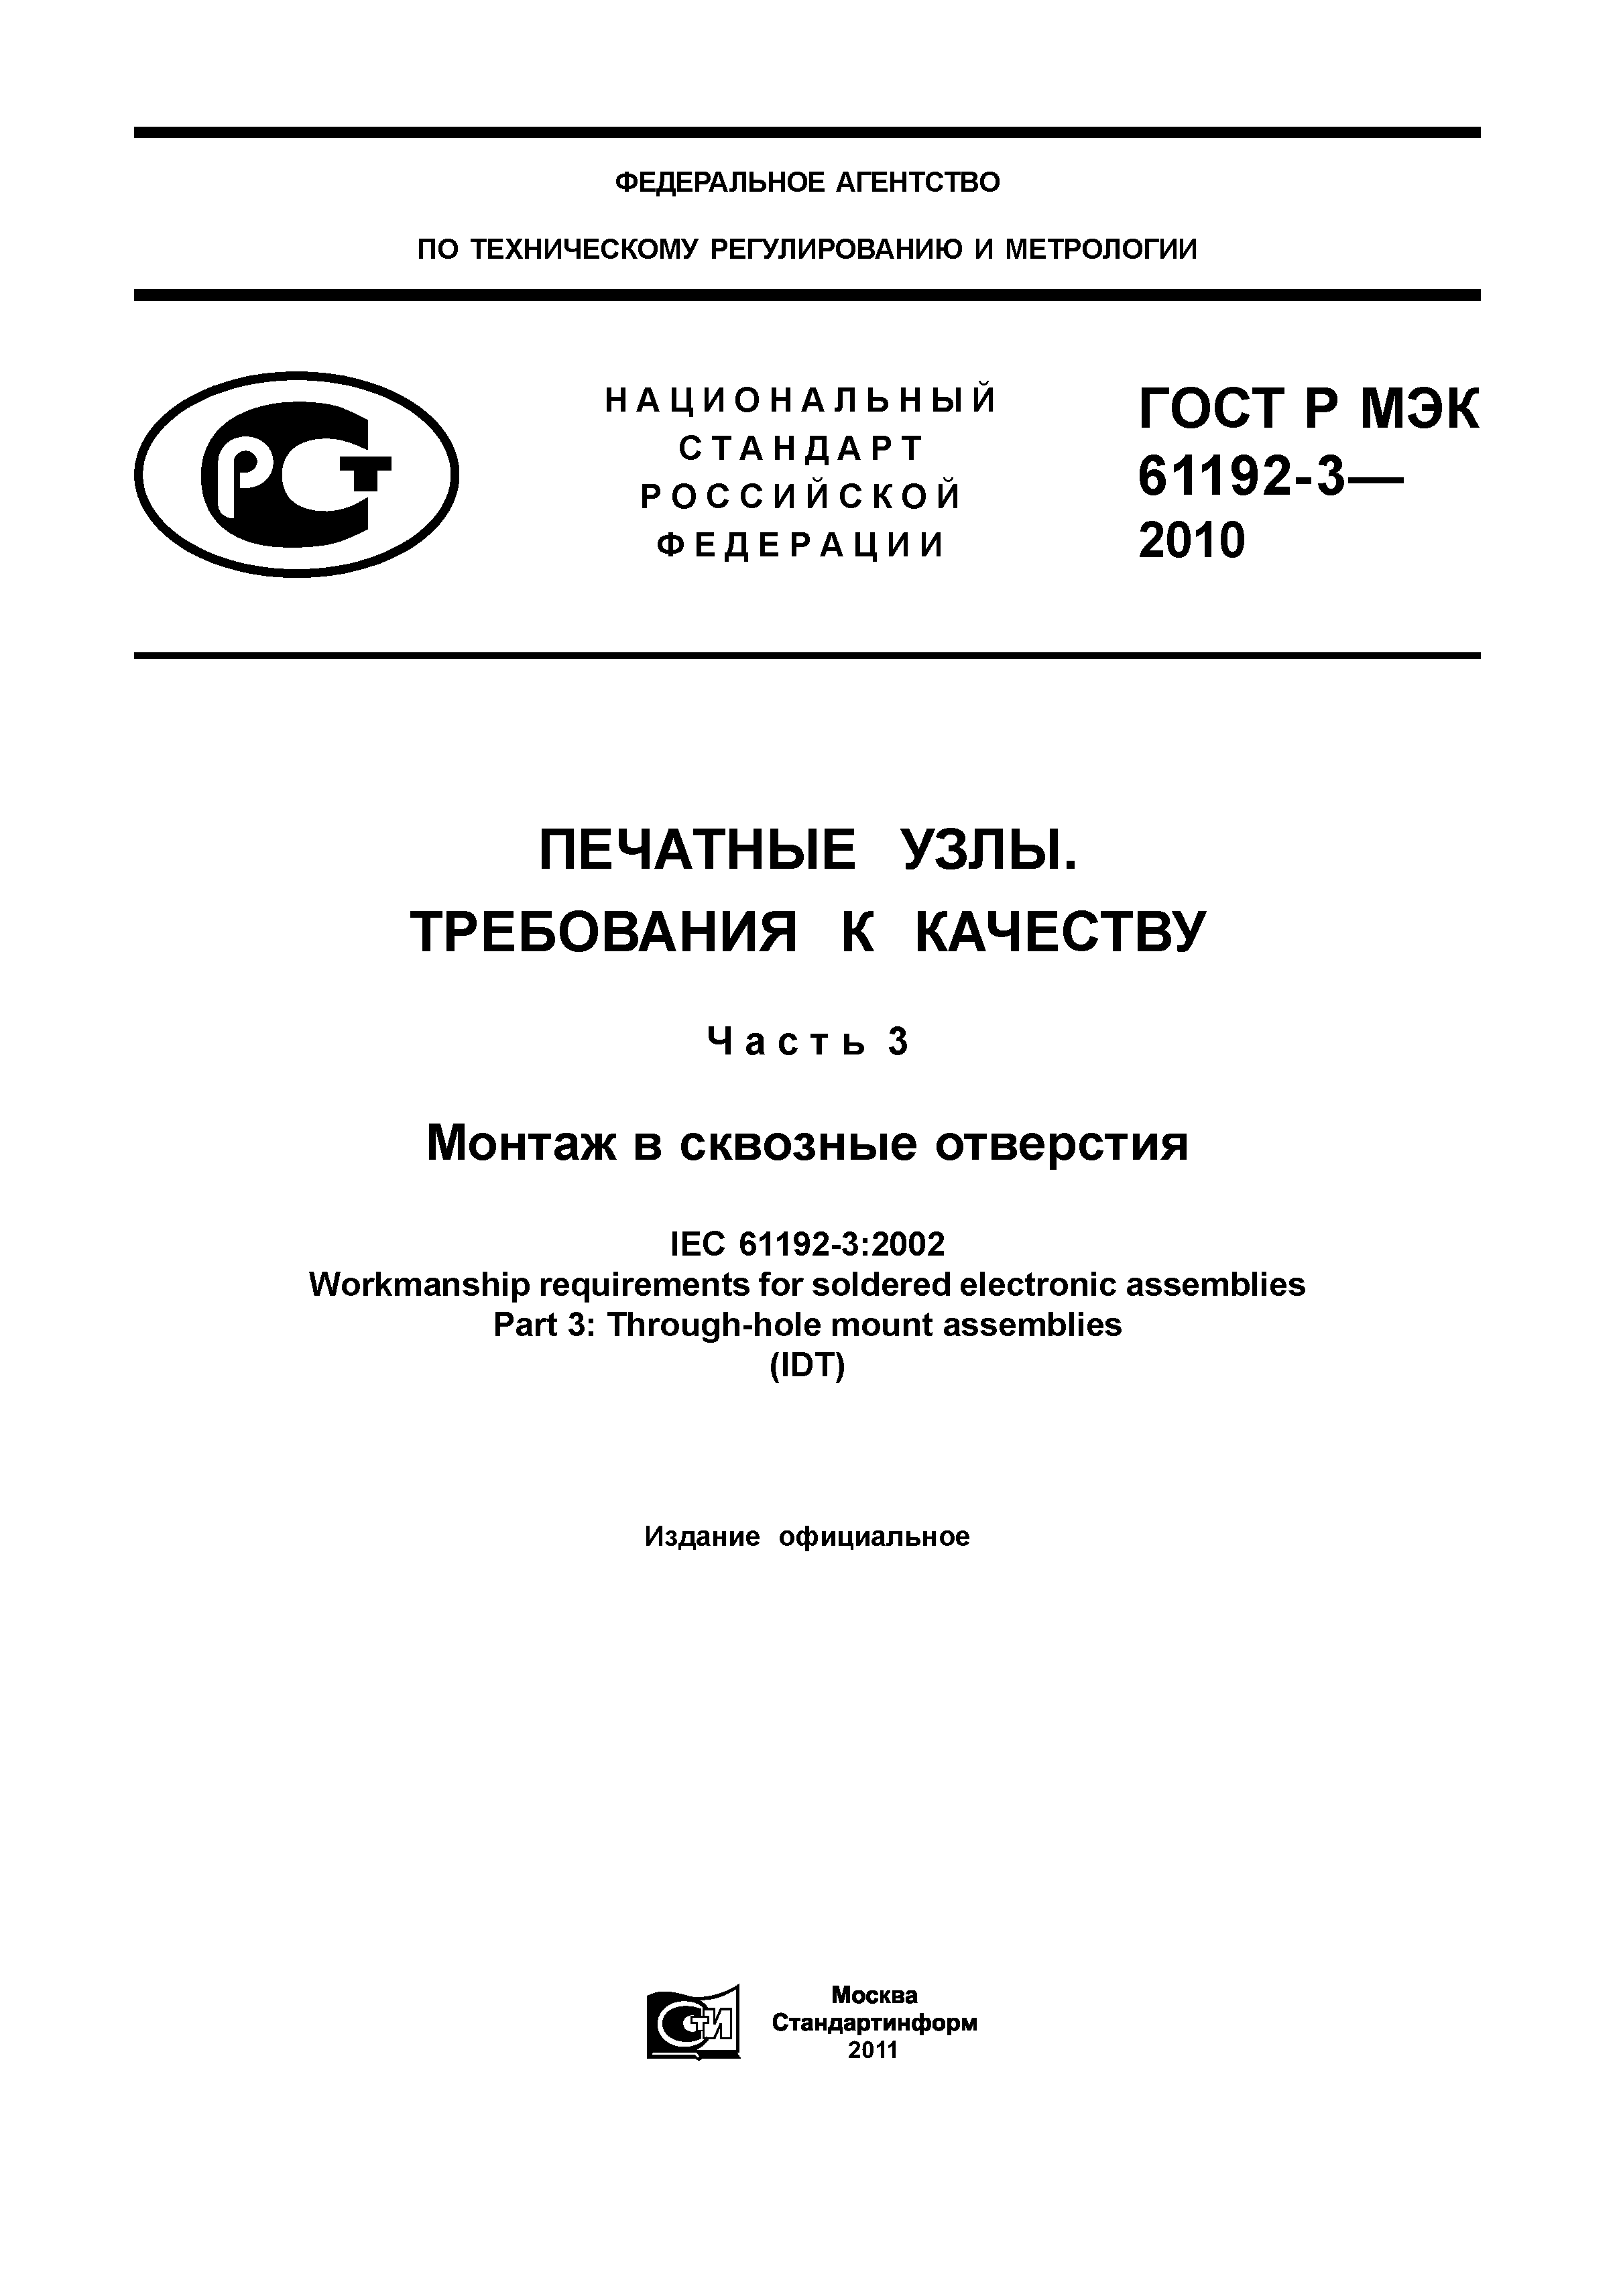 ГОСТ Р МЭК 61192-3-2010